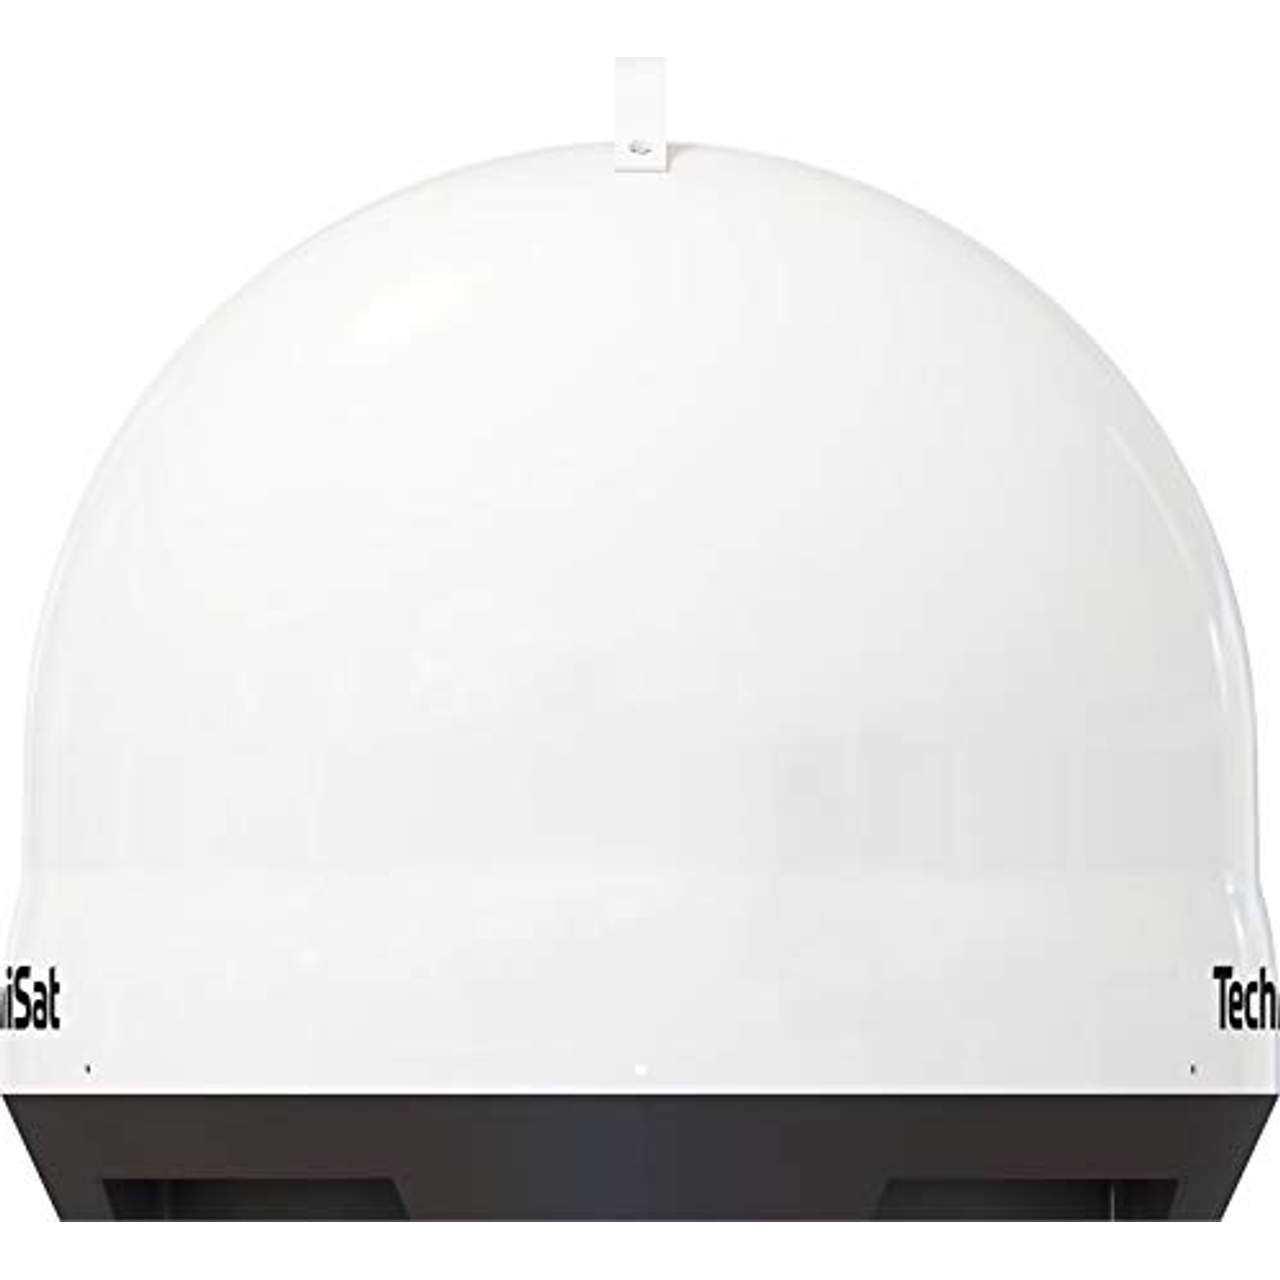 TechniSat Skyrider Dome Vollautomatische Sat-Anlage (Single)